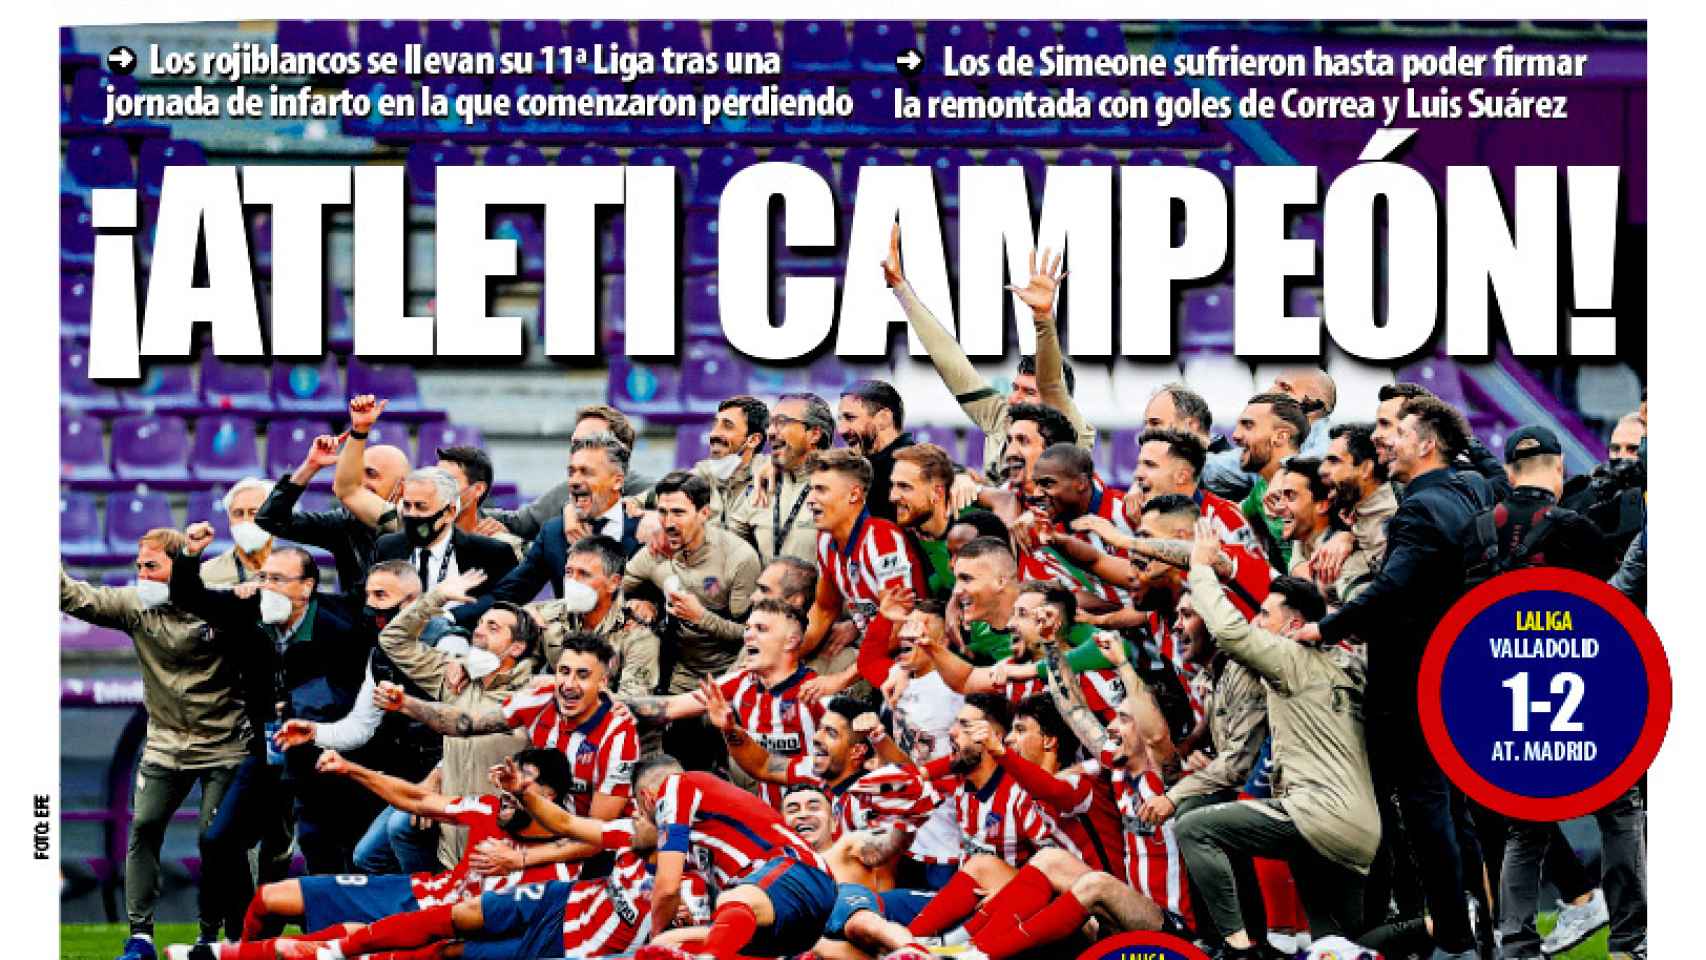 La portada del diario Mundo Deportivo (23/05/2021)